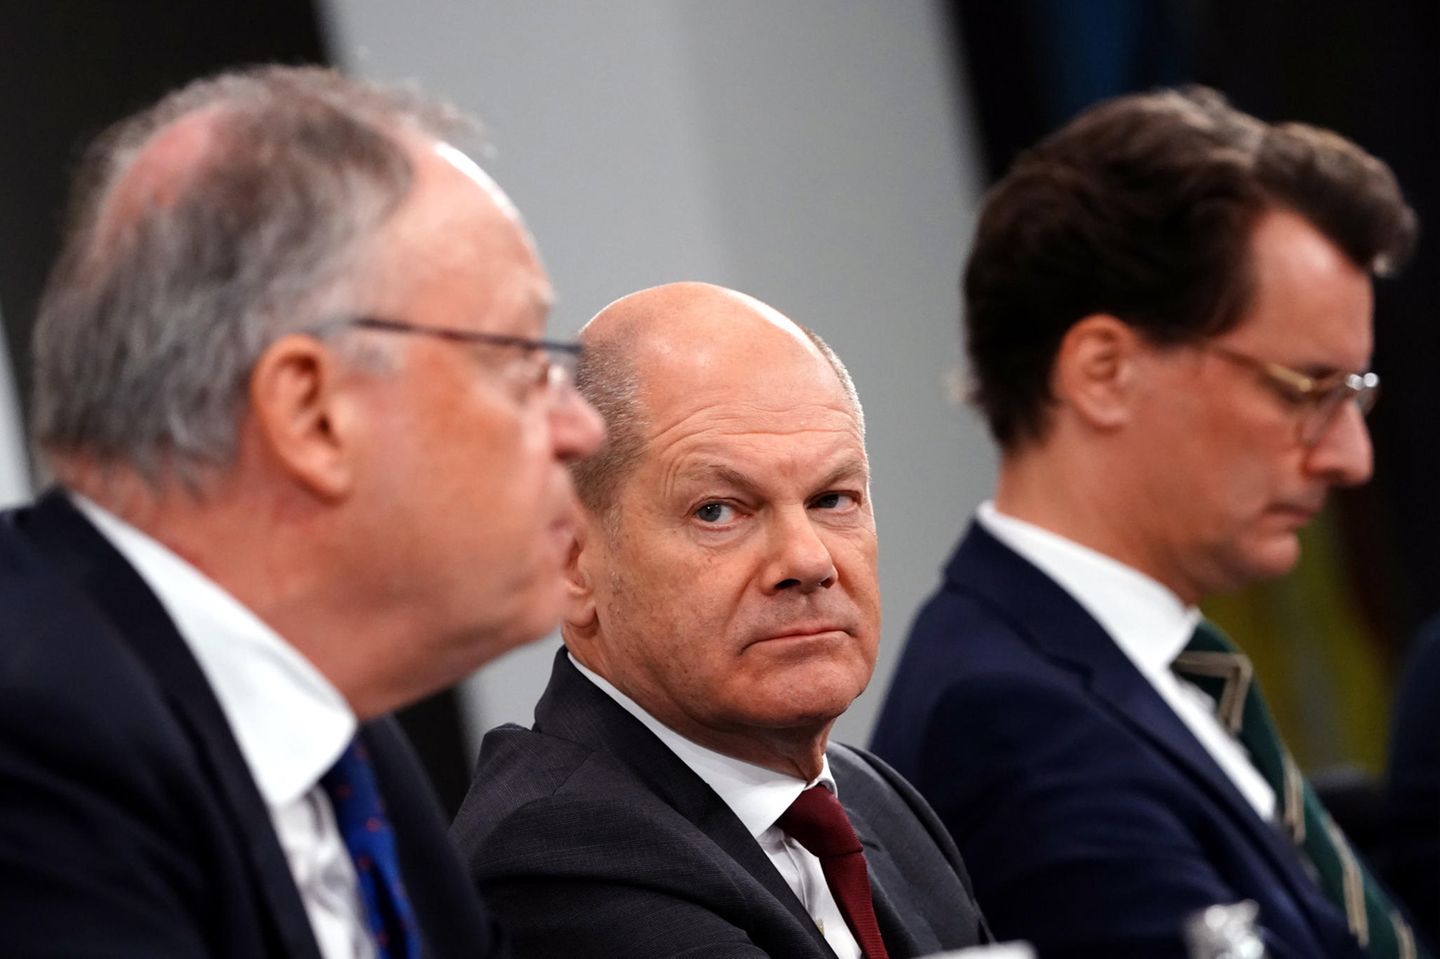 Niedersachsens Ministerpräsident Weil, Kanzler Scholz und NRW-Regierungschef Wüst bei einer Preissekonferenz